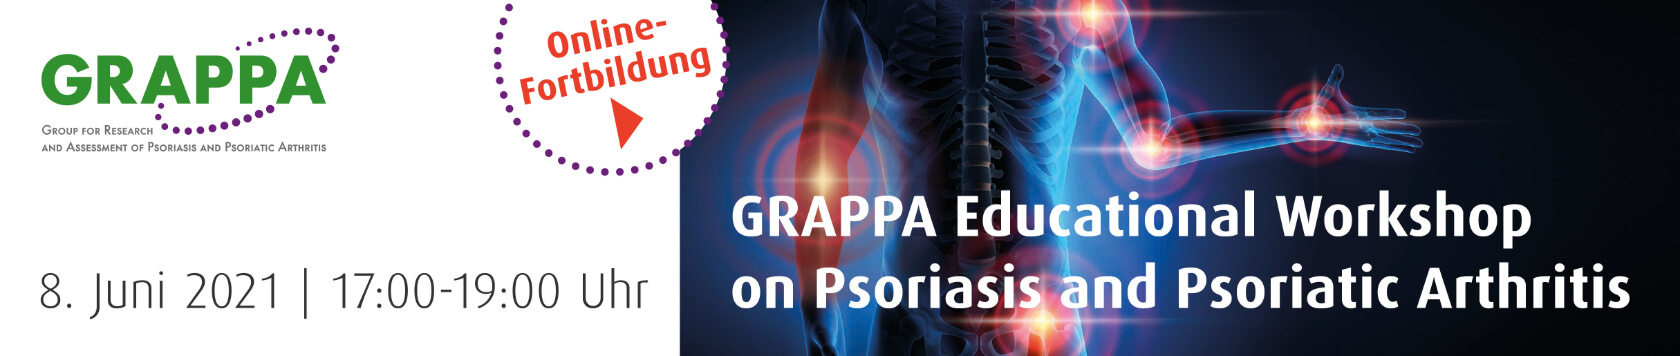 GRAPPA Fortbildungsveranstaltung zu Psoriasis und Psoriasis-Arthritis